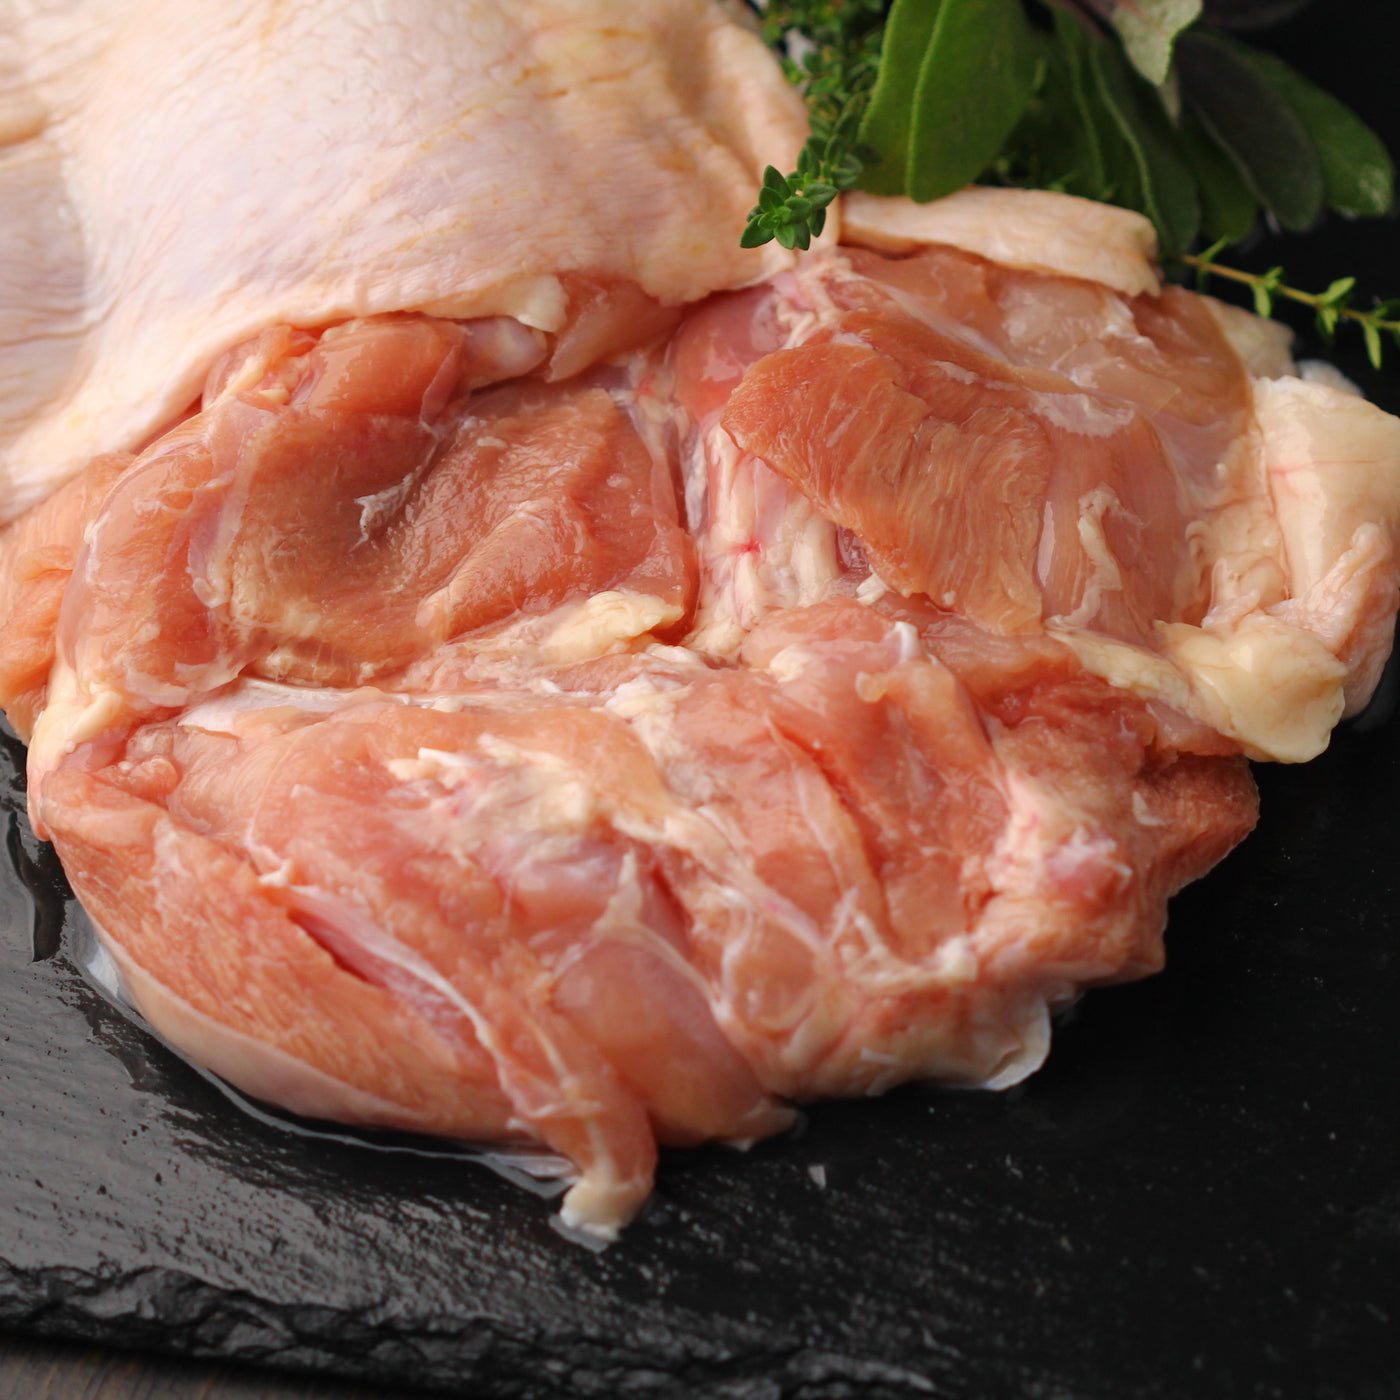 Kirkland Signature Halal Chicken Thighs, 2 kg average weight*